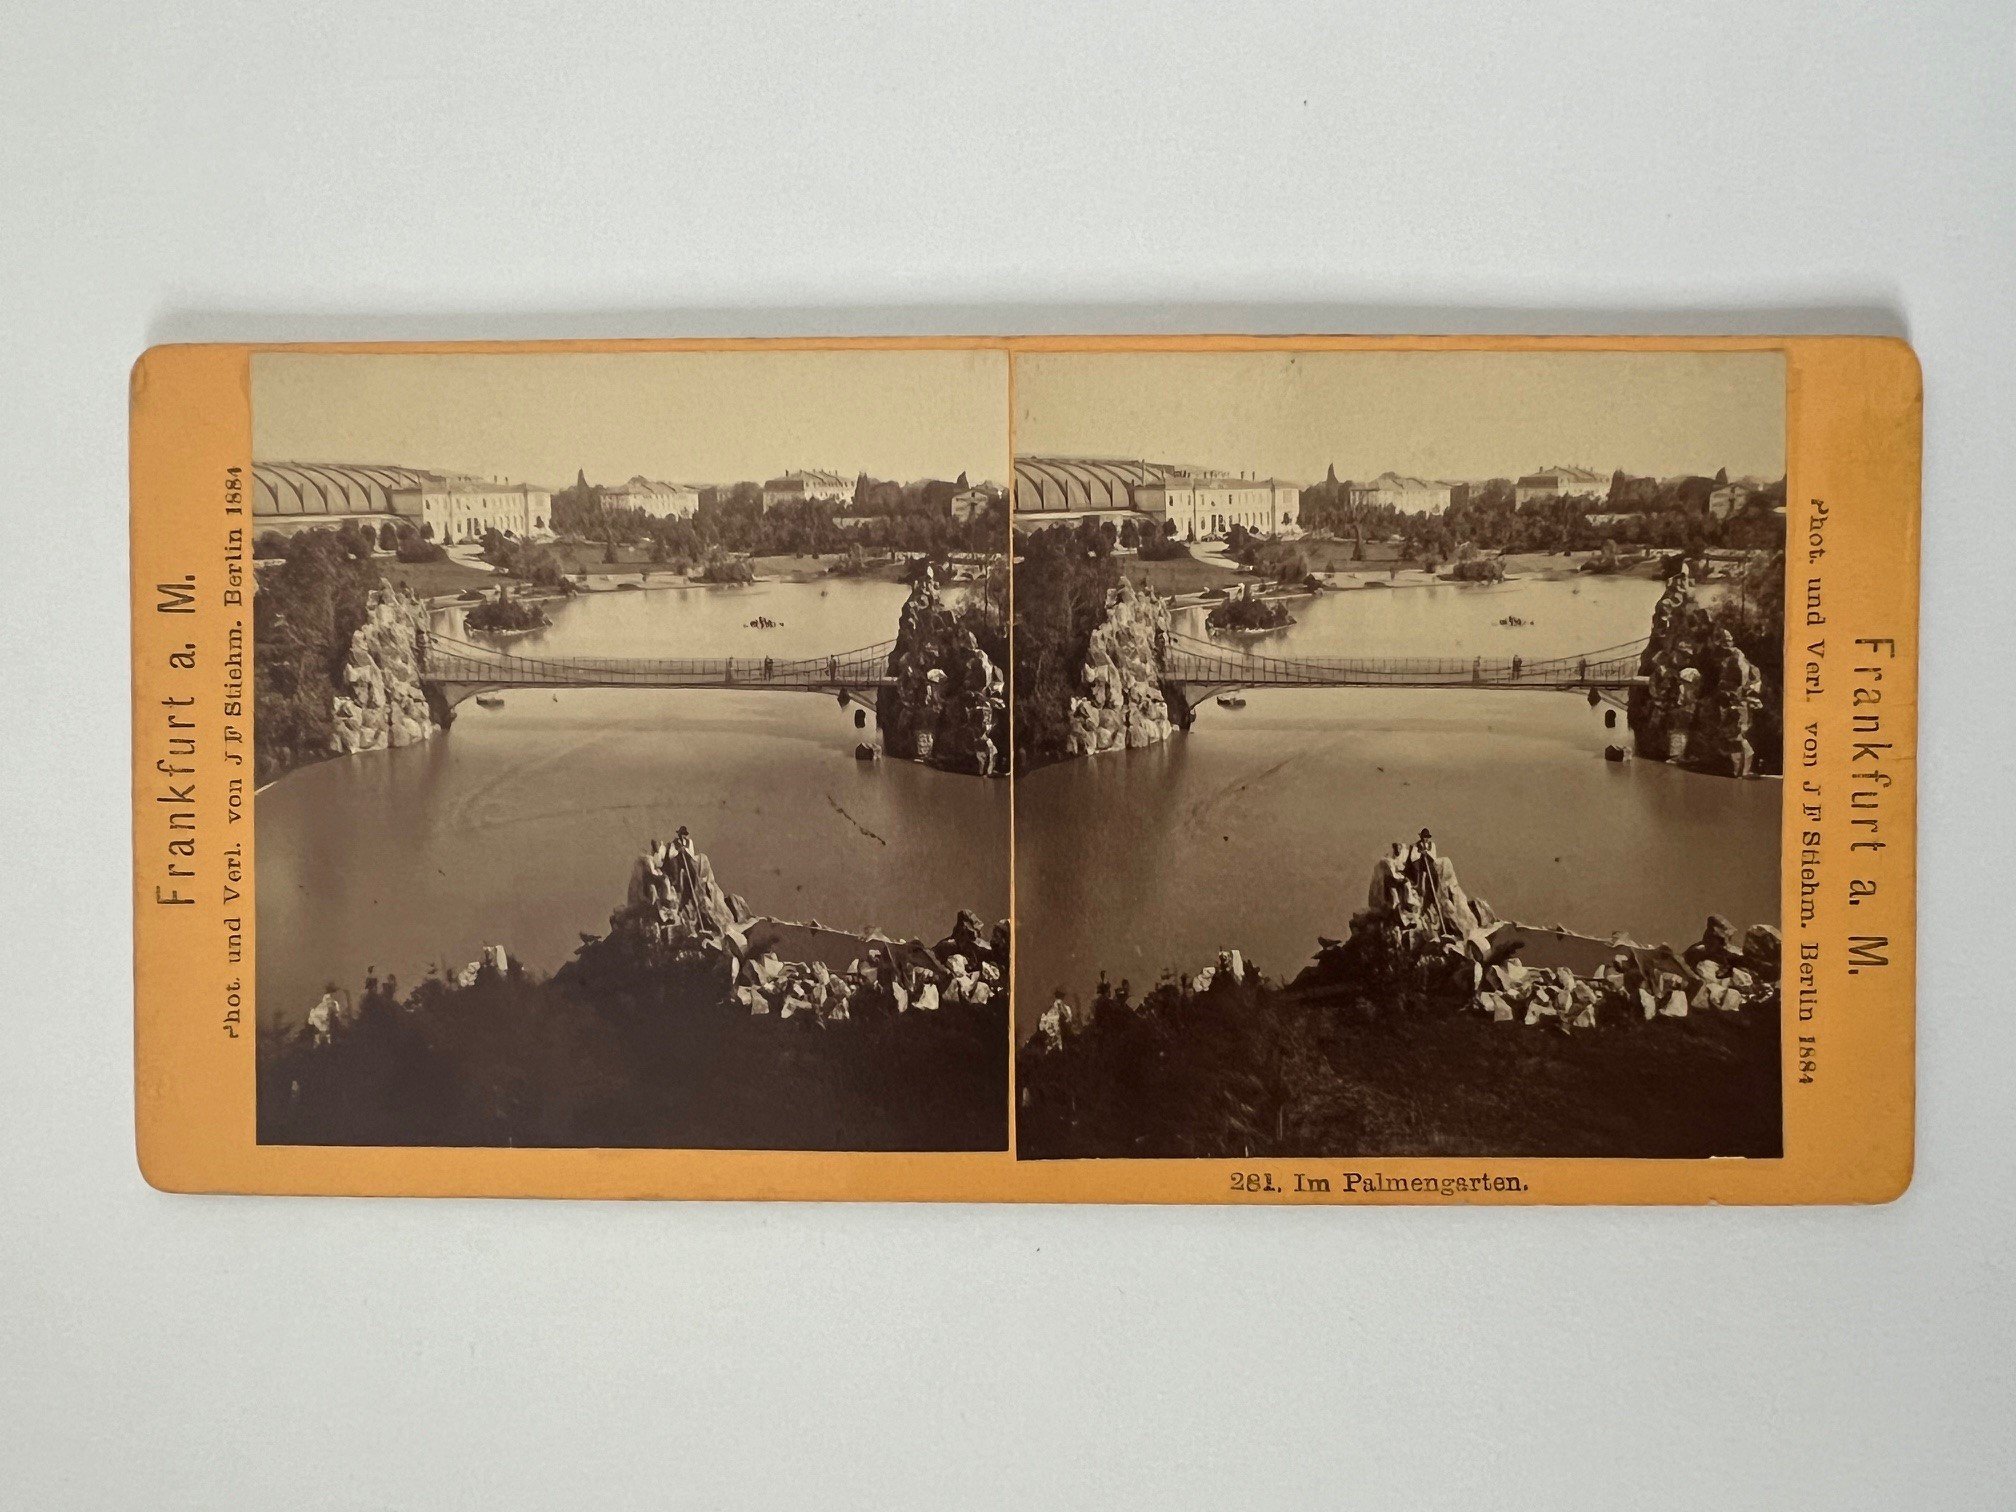 Stereobild, Johann Friedrich Stiehm, Frankfurt, Nr. 281, Im Palmengarten, 1884. (Taunus-Rhein-Main - Regionalgeschichtliche Sammlung Dr. Stefan Naas CC BY-NC-SA)